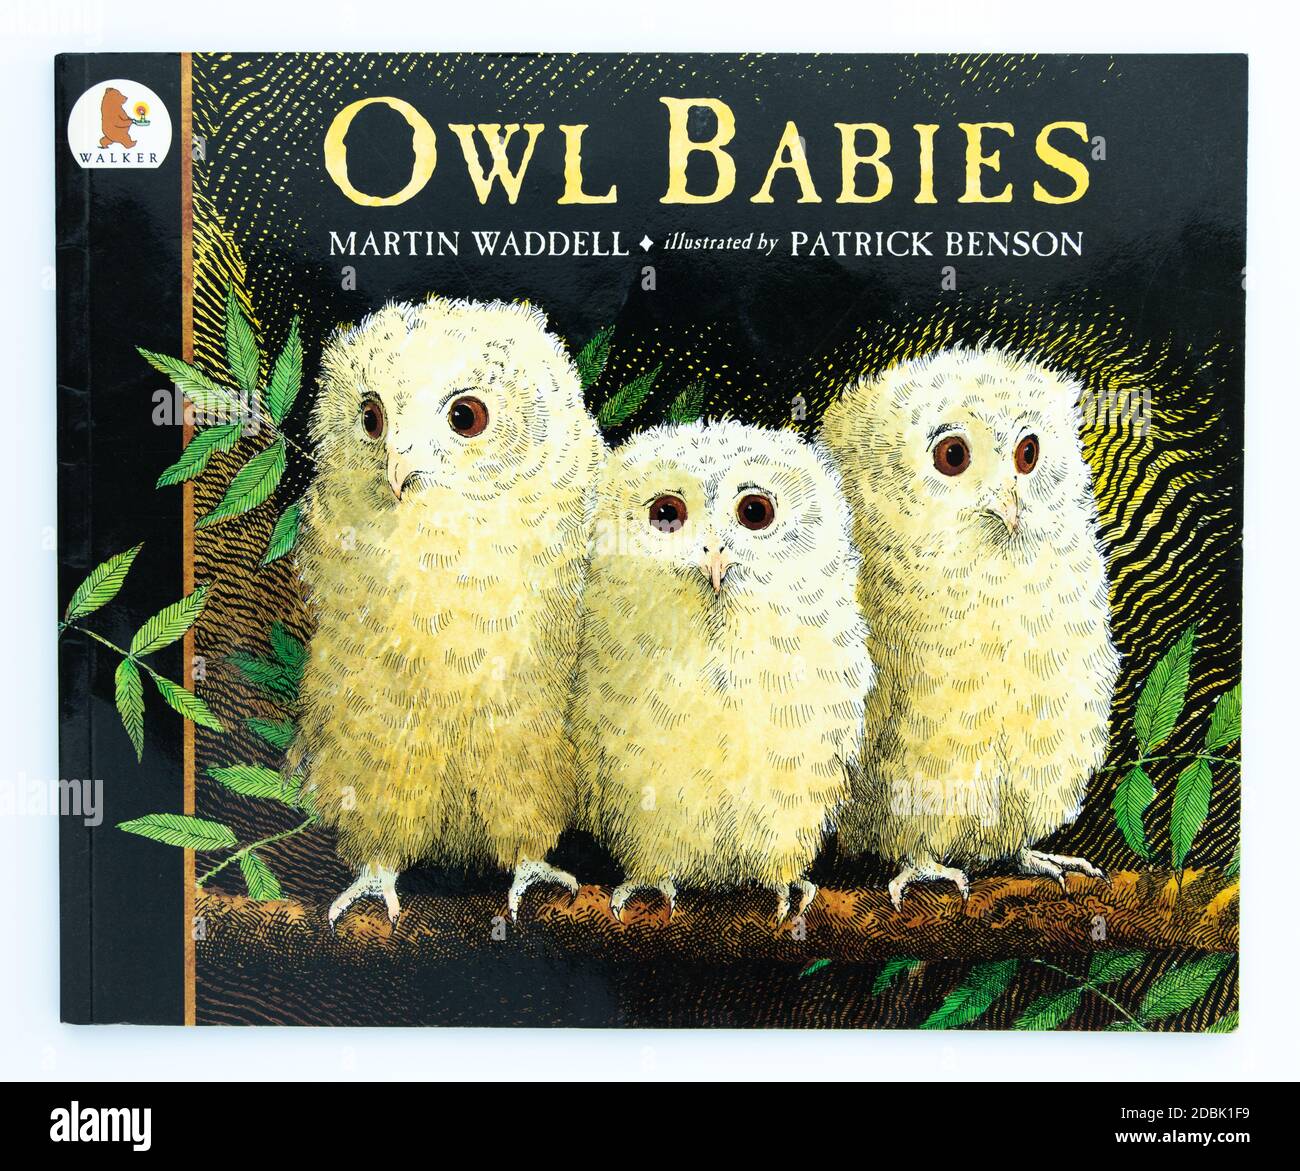 Libro de fotos para niños de Owl Babies de Martin Waddell ilustrado por Patrick Benson Foto de stock